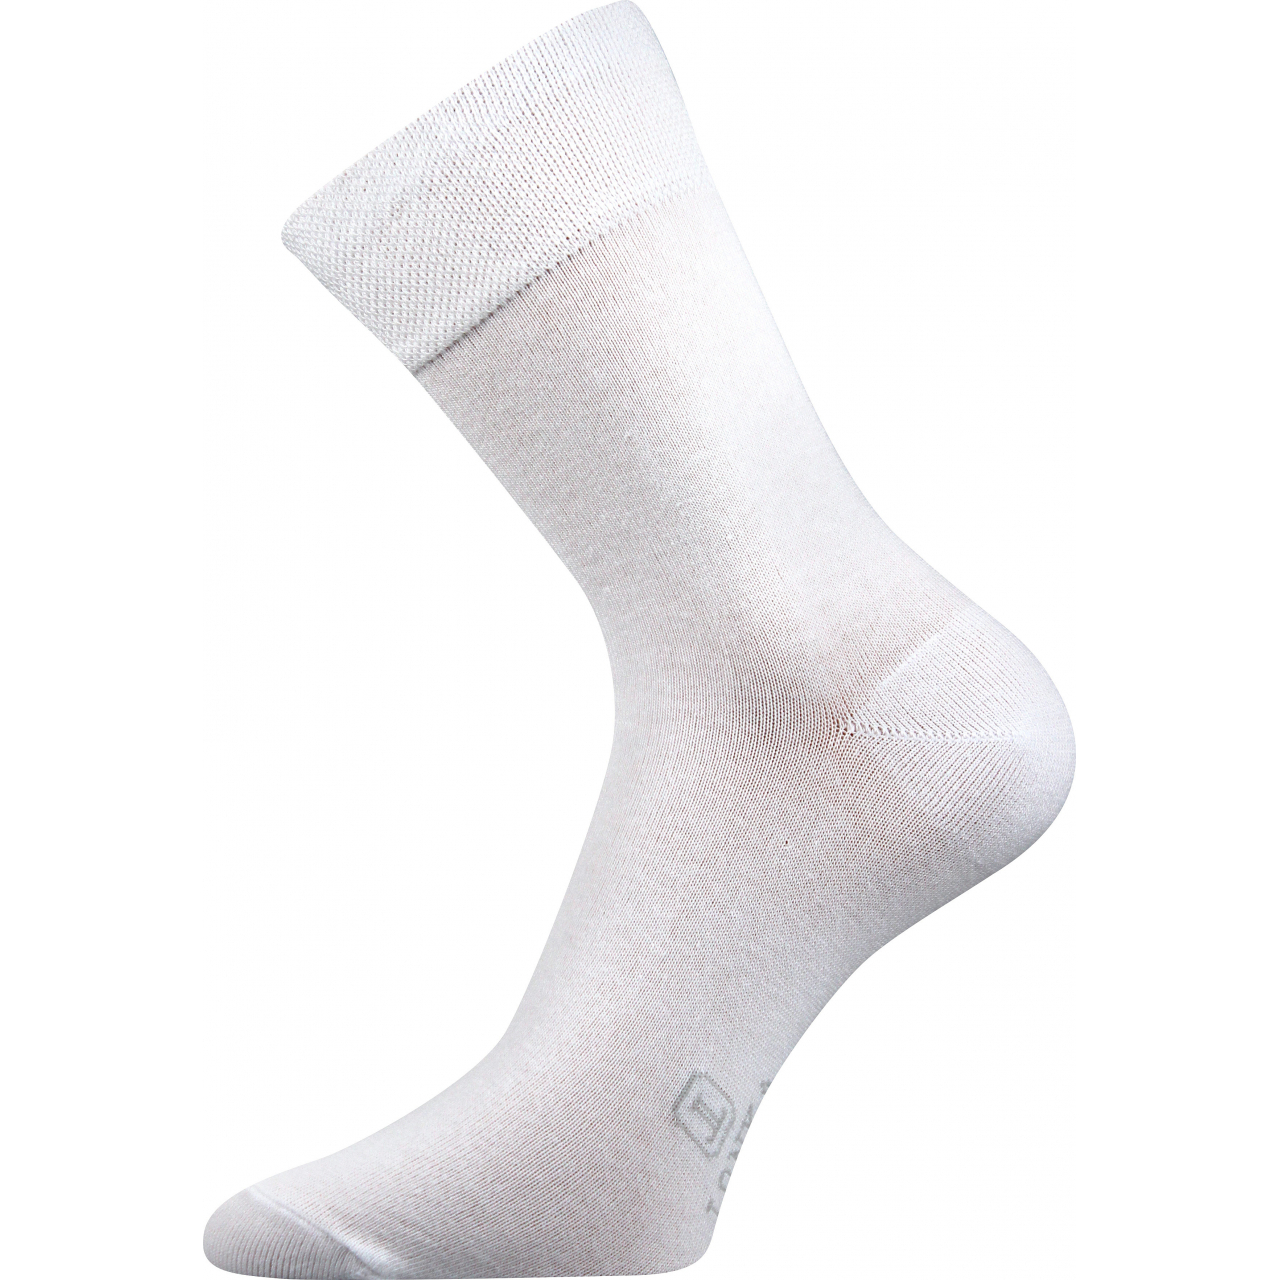 Ponožky pánské Lonka Dasilver - bílé, 47-50